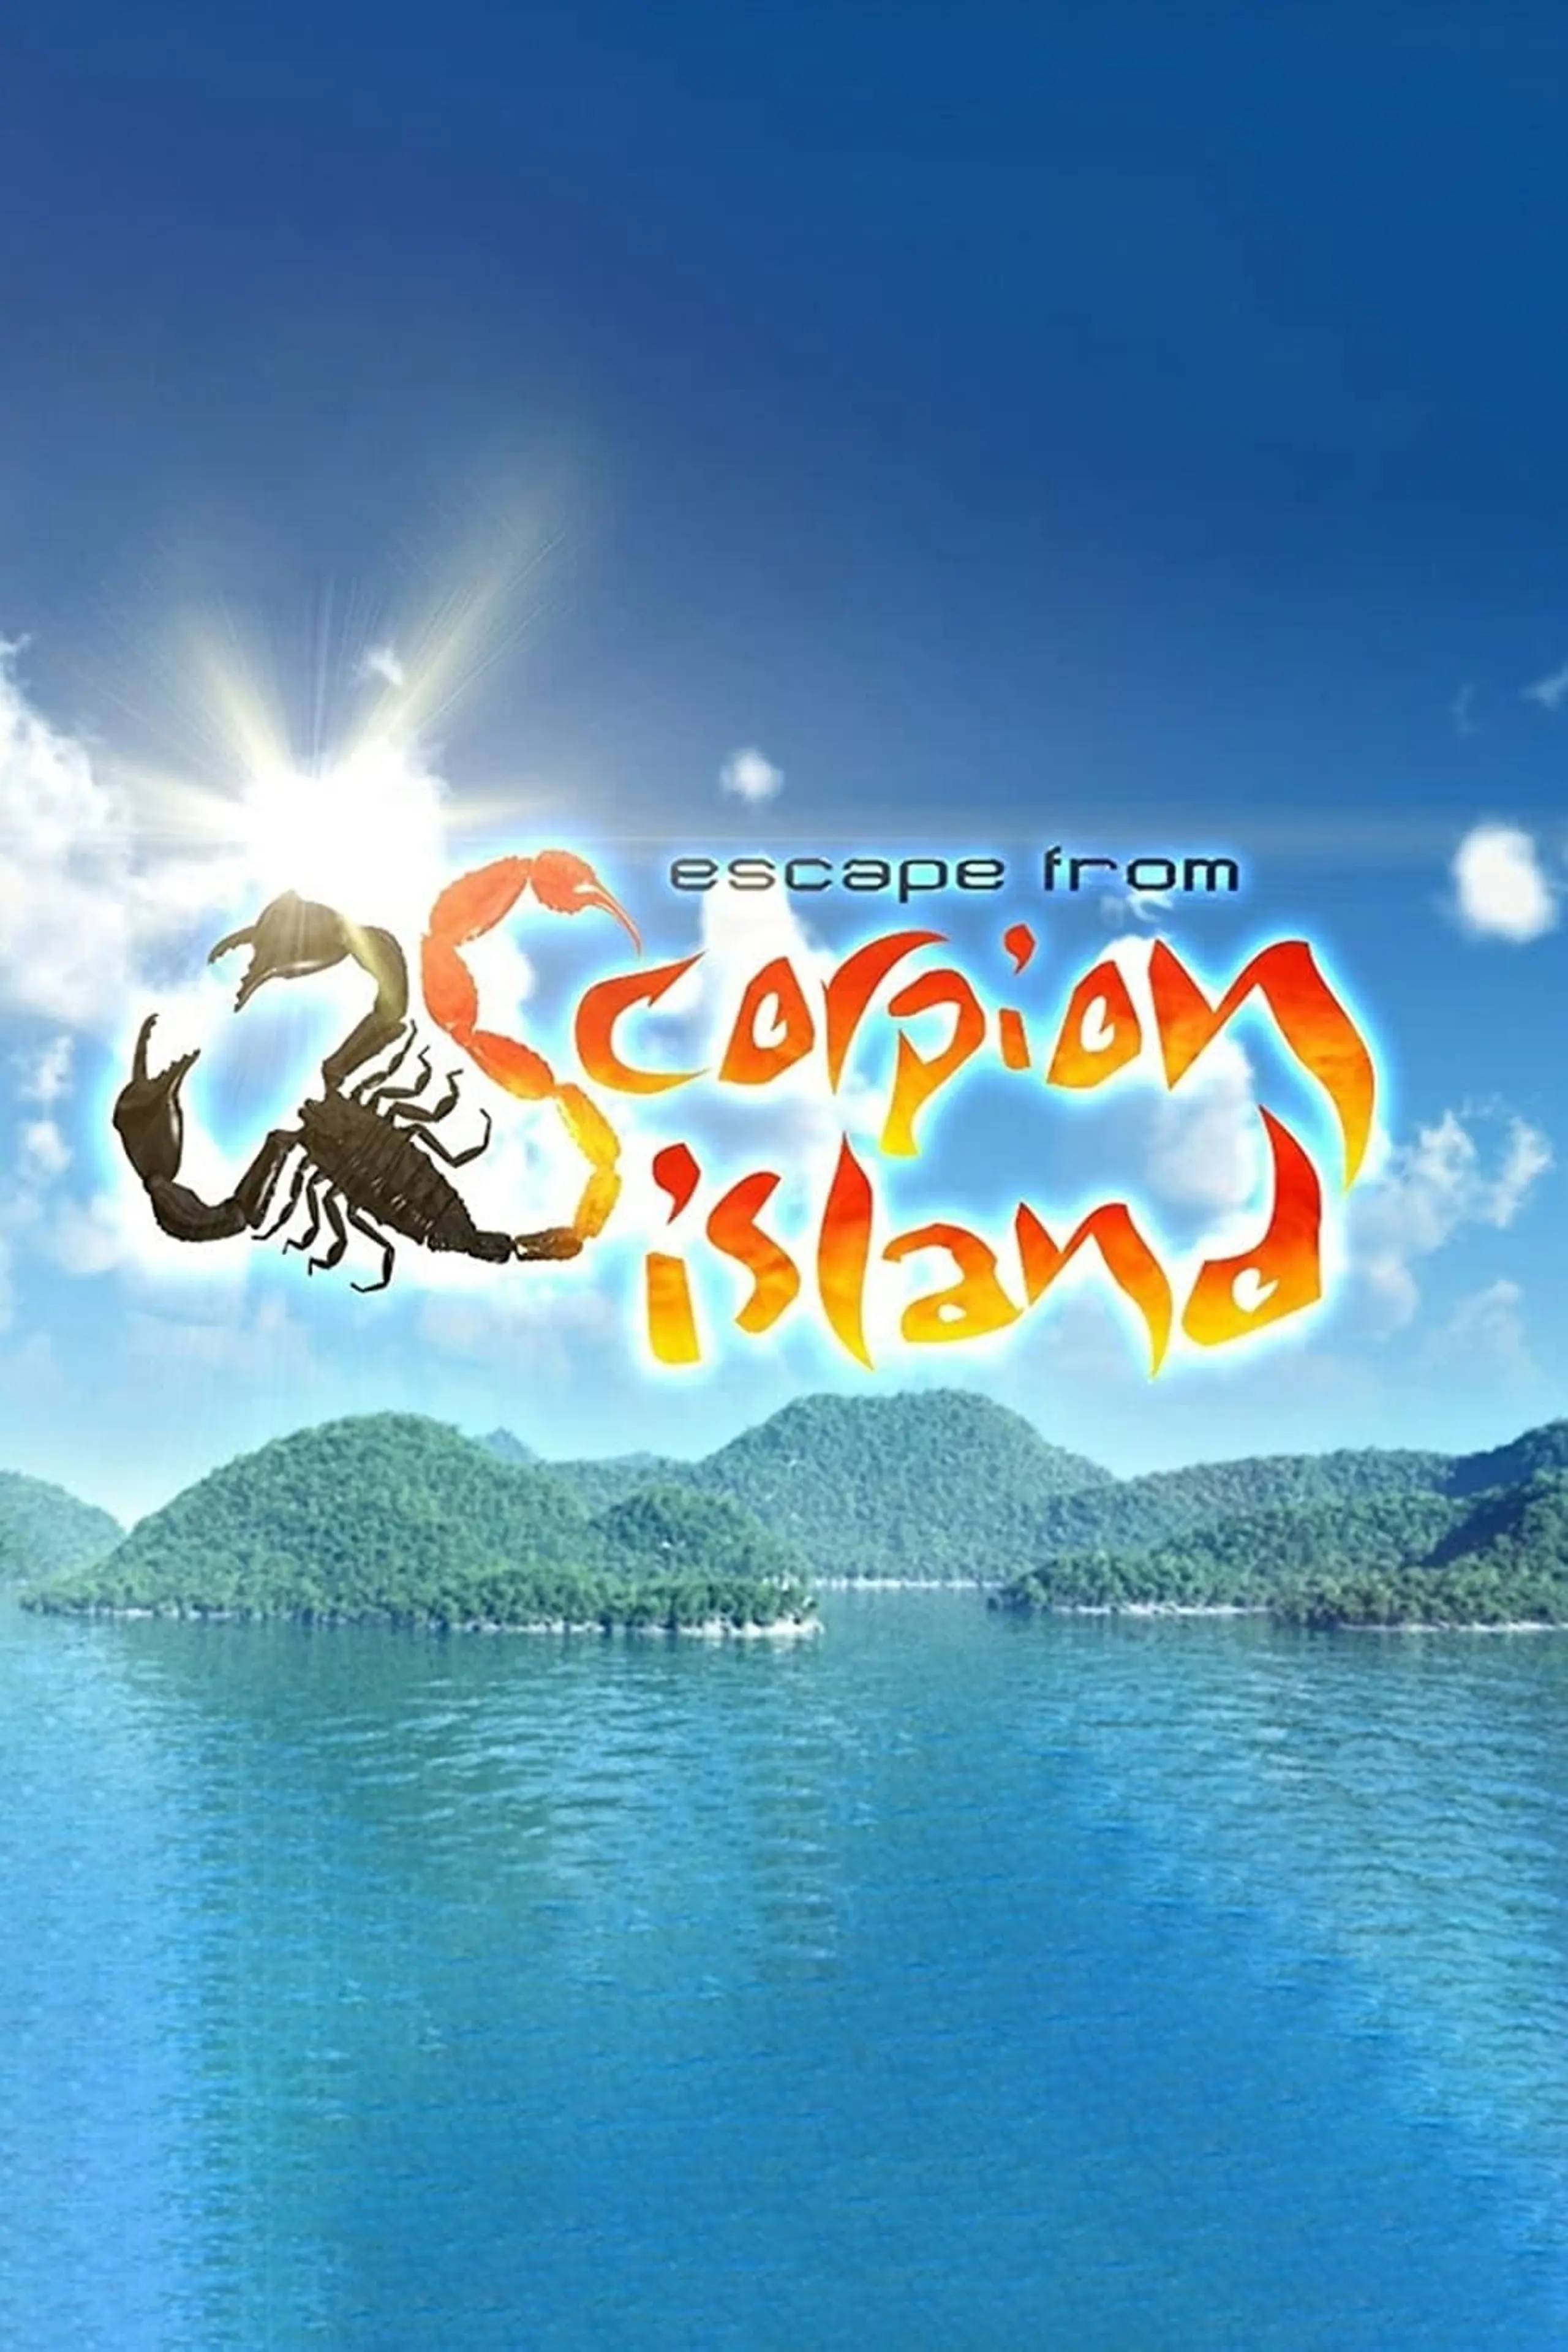 Escape from Scorpion Island